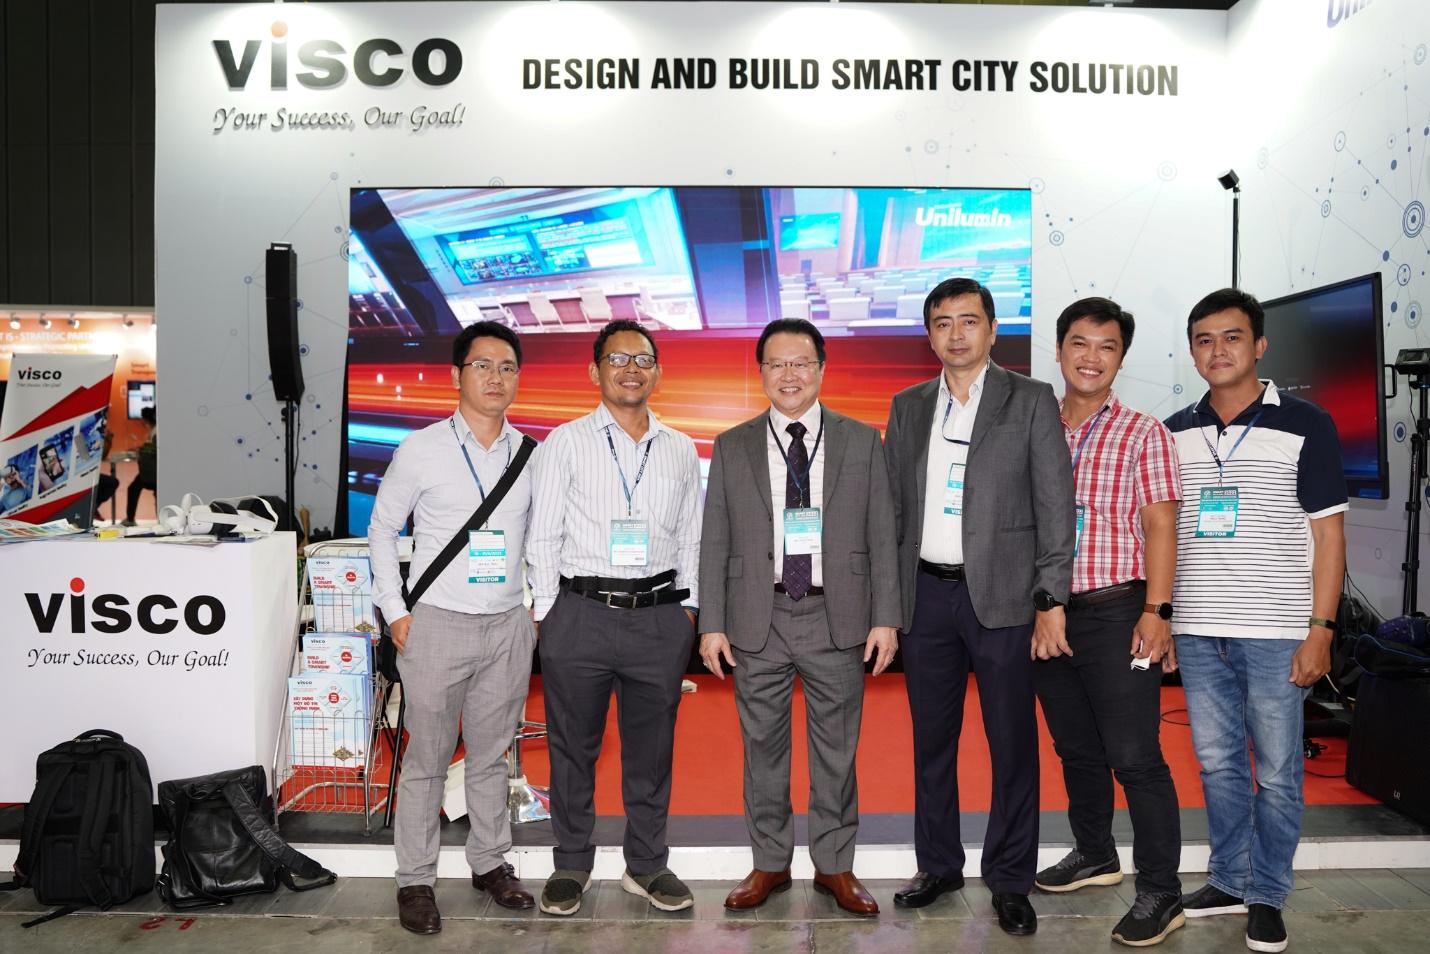 Sản phẩm - Dịch vụ - VISCO giới thiệu là đơn vị tiên phong trong lĩnh vực tư vấn, thiết kế & xây dựng thành phố thông minh tại Việt Nam (Hình 3).